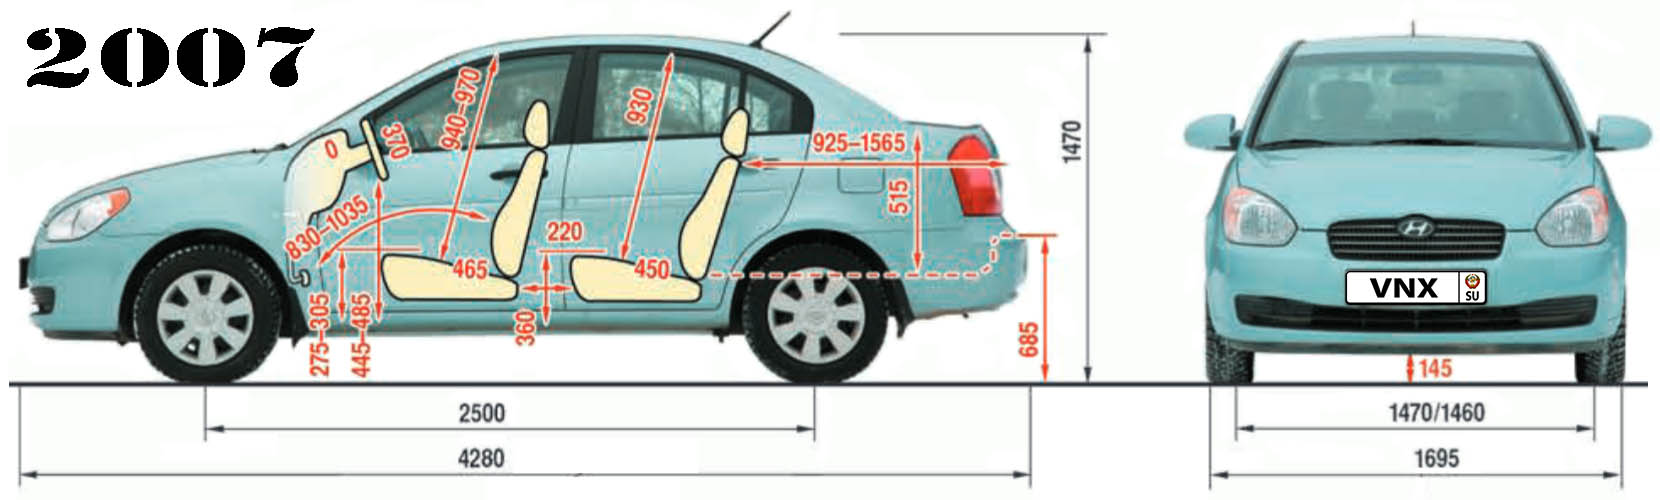 Габаритные размеры Хундай Акцент Верна 2007 (dimensions Hyundai Accent Verna)